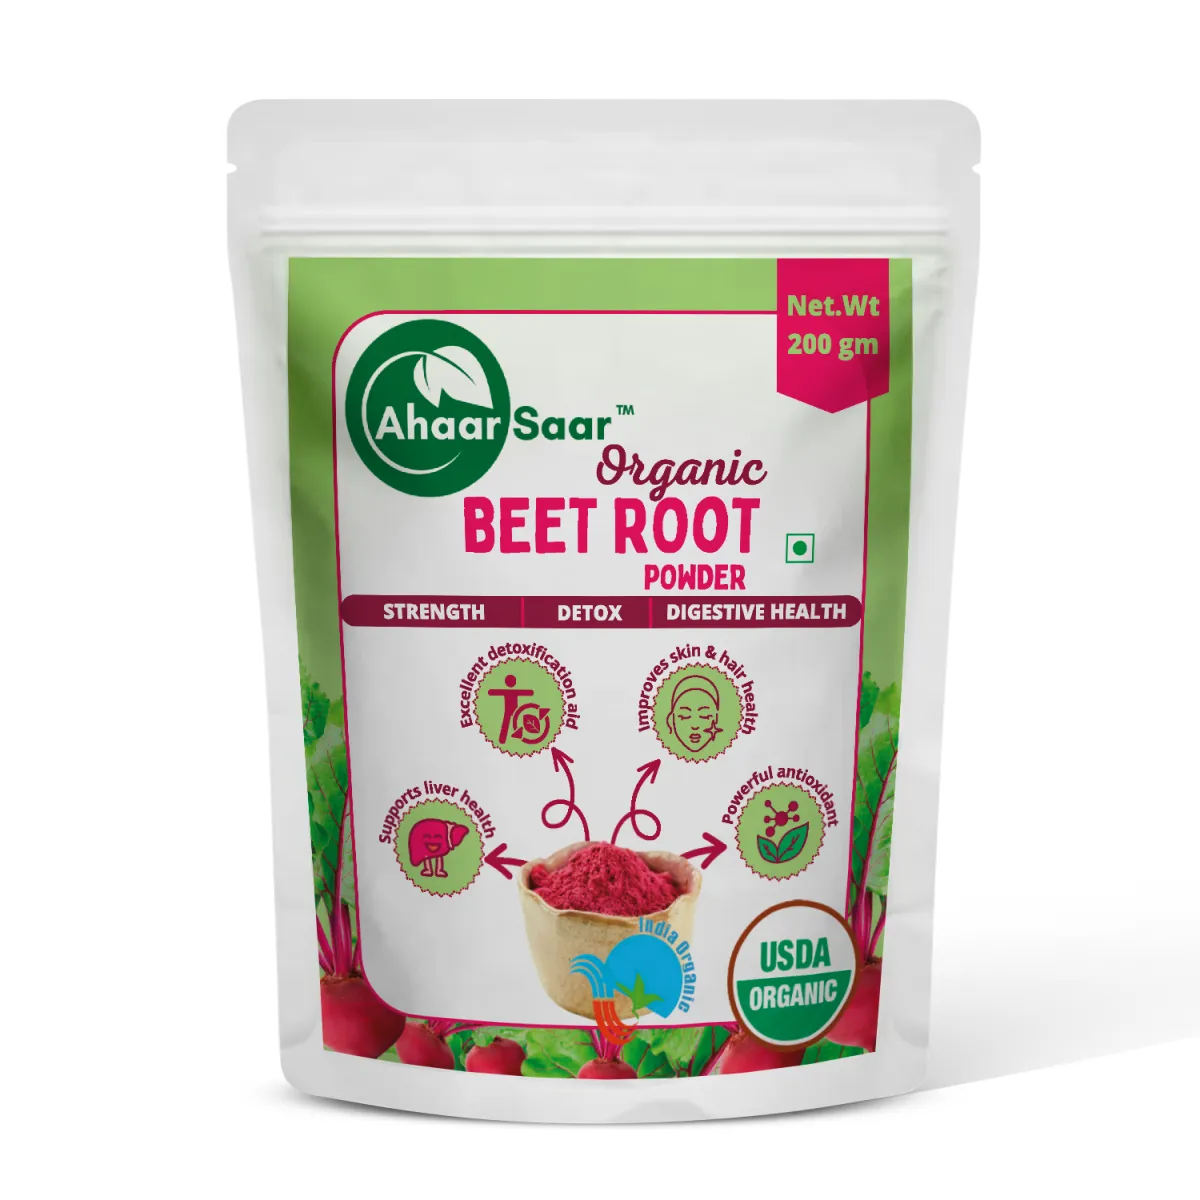 Ahaar Saar Organic Beet Root Powder 200g